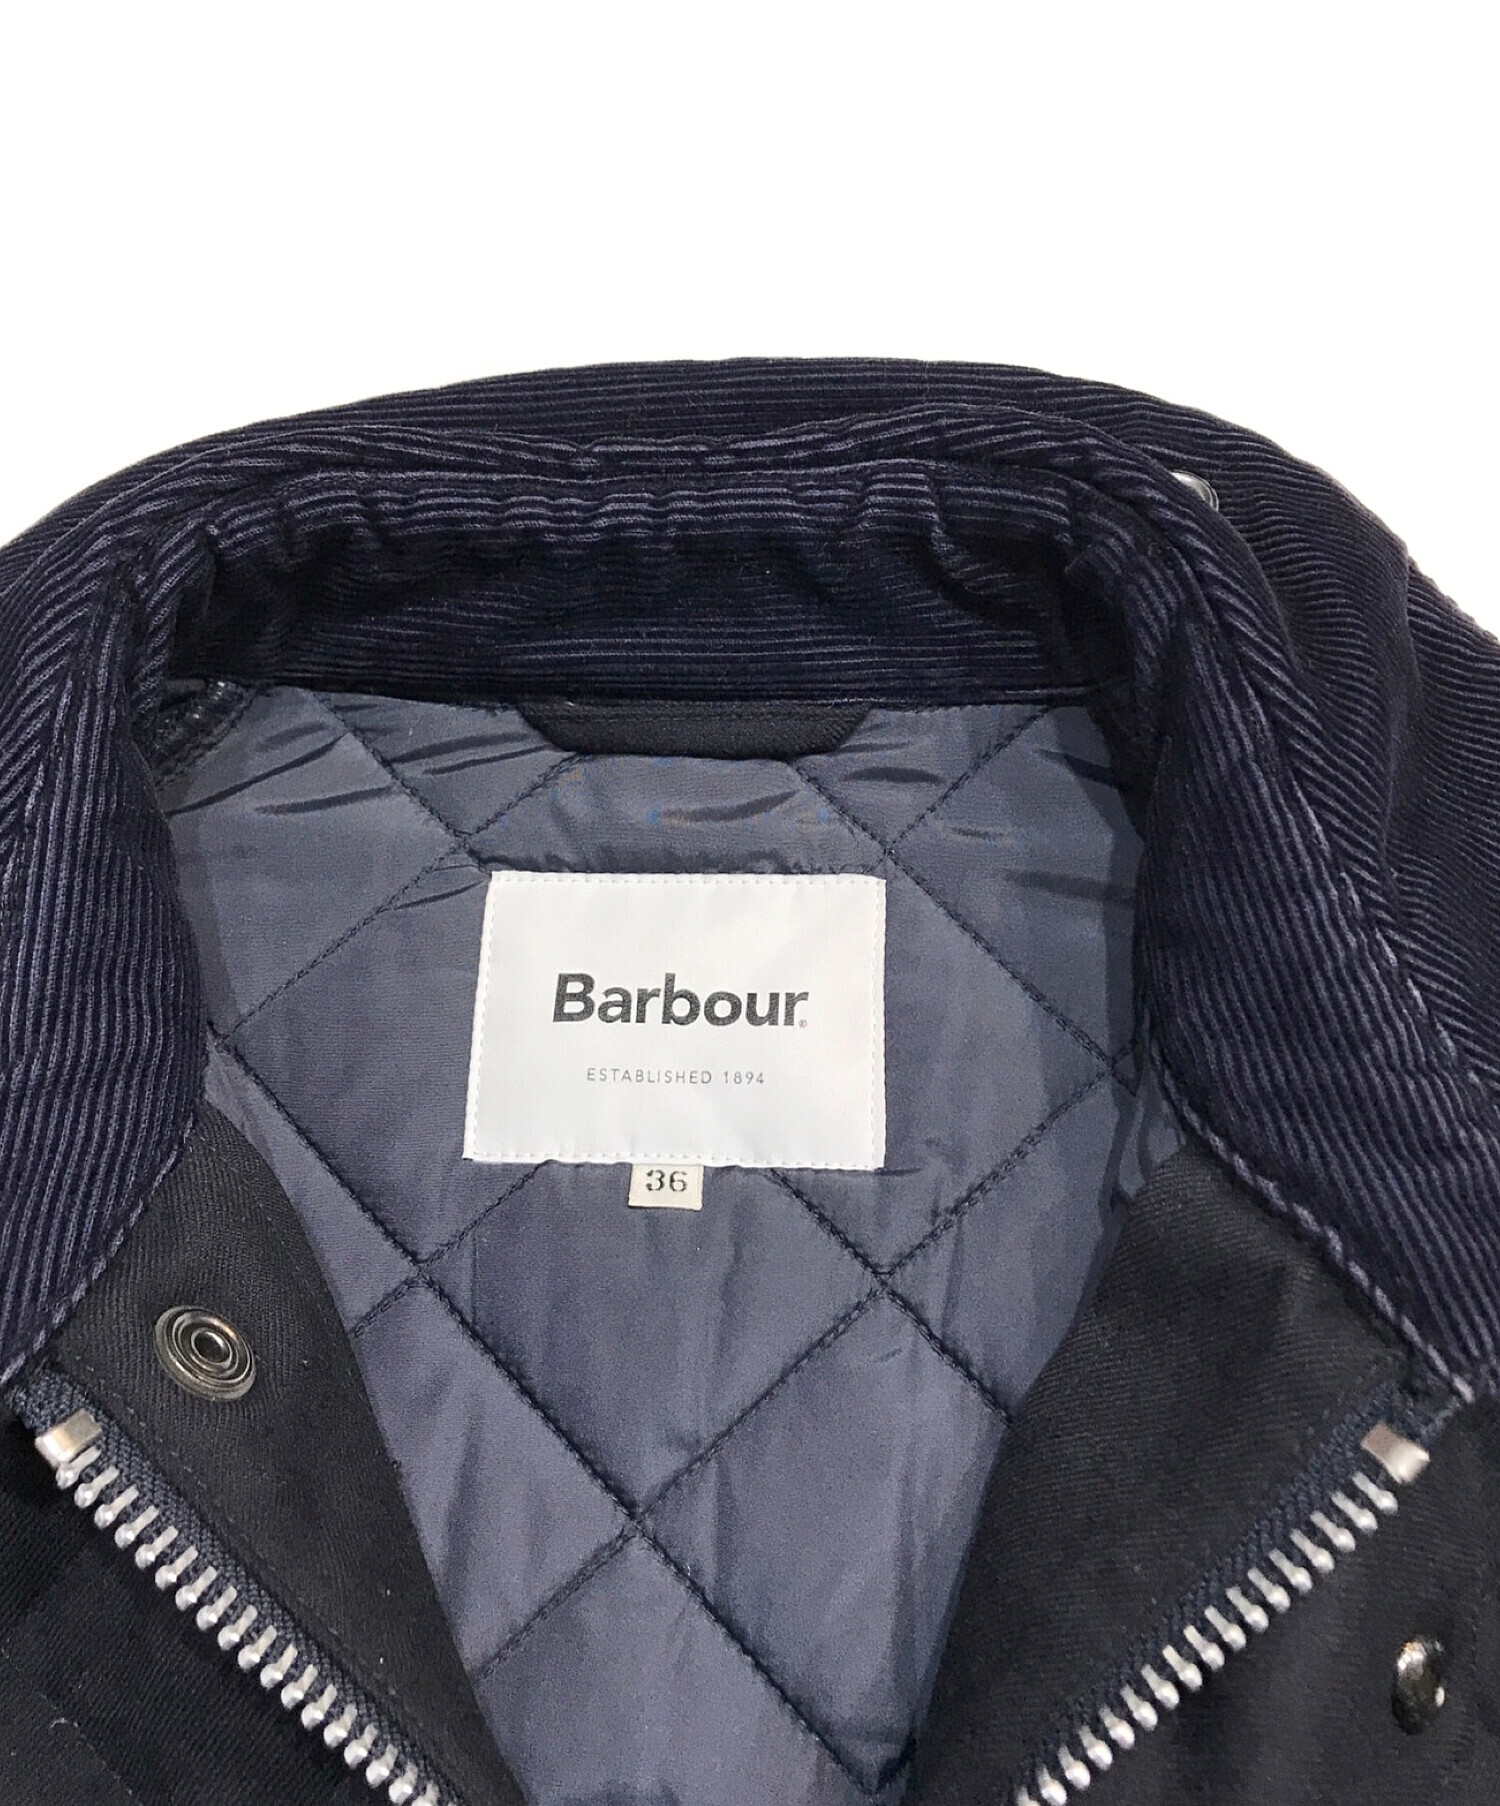 Barbour (バブアー) ビデイルSLキルティングジャケット ネイビー サイズ:36